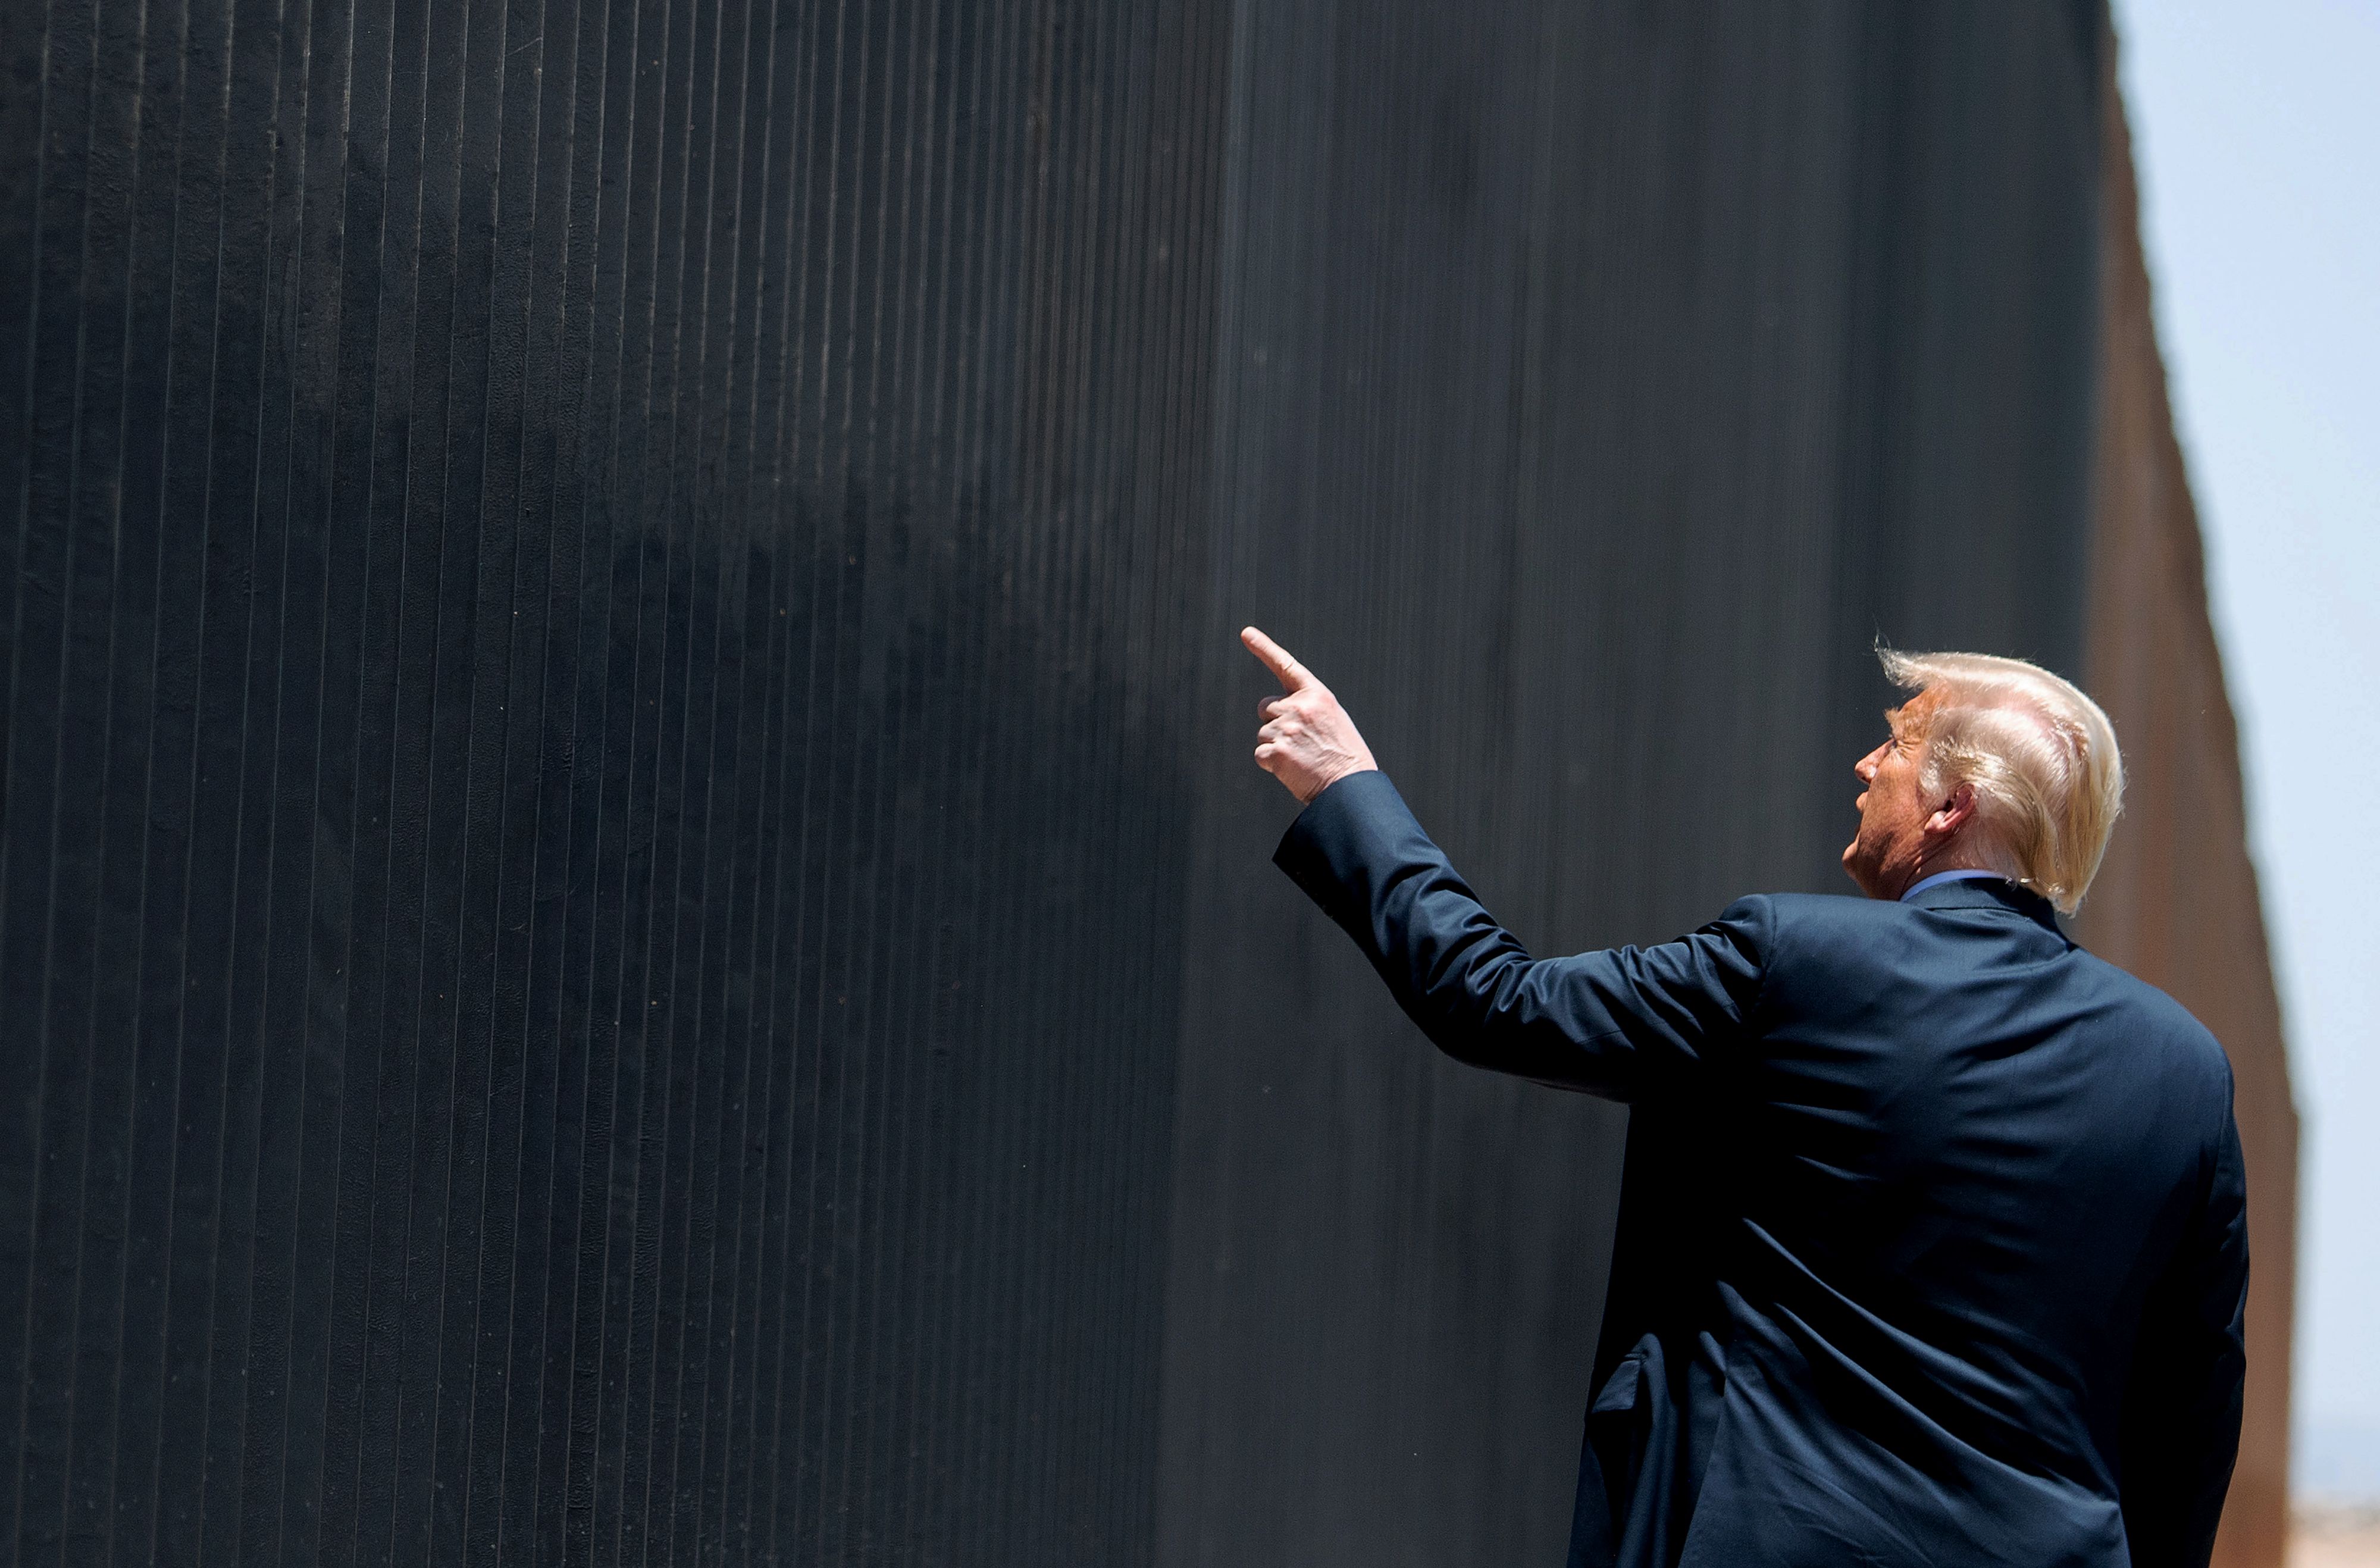 After low turnout at Tulsa rally, Trump visits border wall